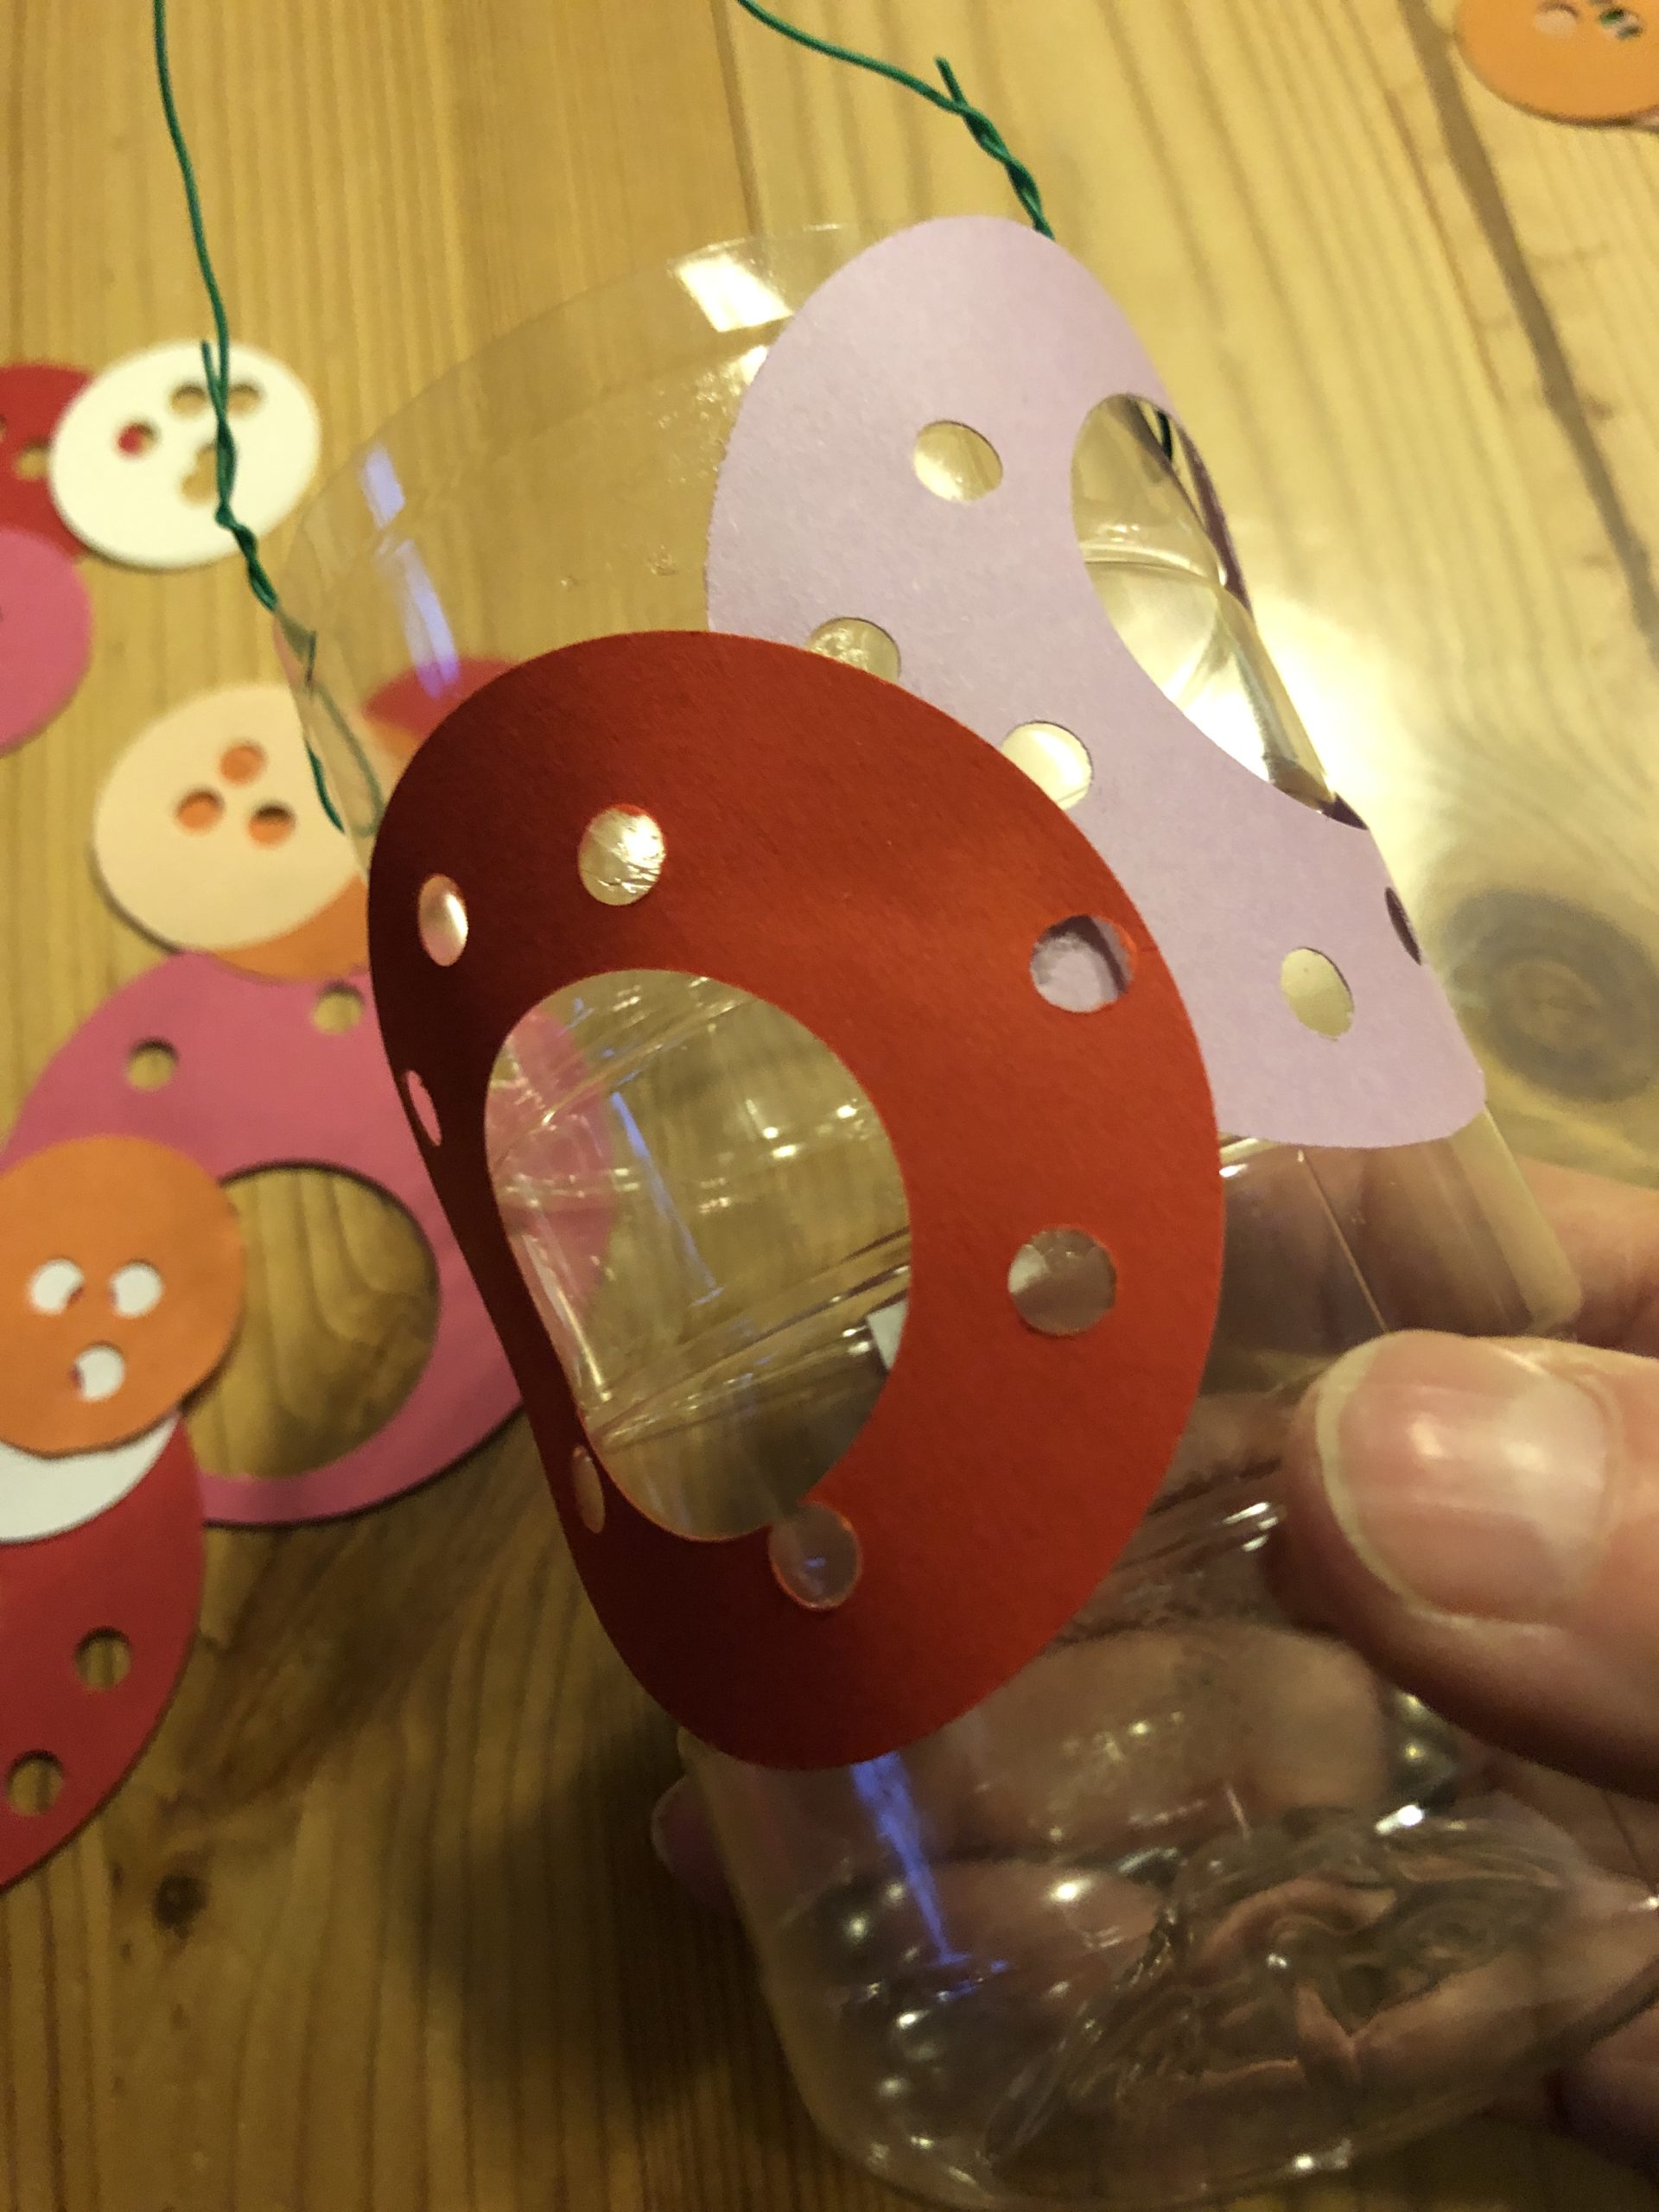 Bild zum Schritt 12 für das Bastel- und DIY-Abenteuer für Kinder: 'Dann beginnt ihr die Kreise und Ringe nacheinander mit dem...'